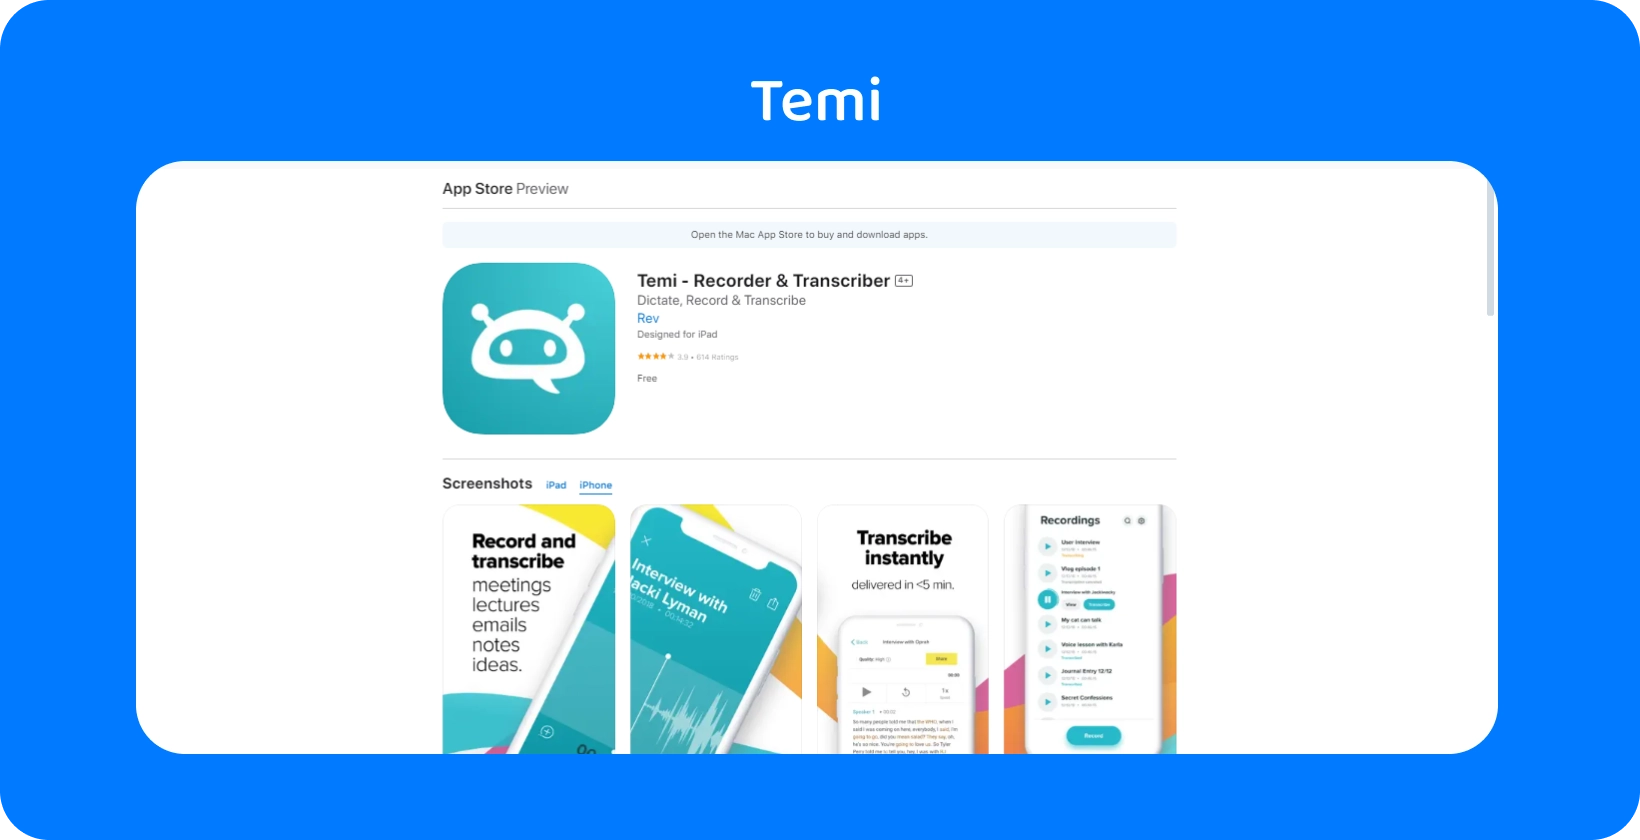 Kuvakaappaus Temi App Store listauksesta, jossa korostetaan sen pikatallennus- ja pikatranskriptioominaisuuksia.